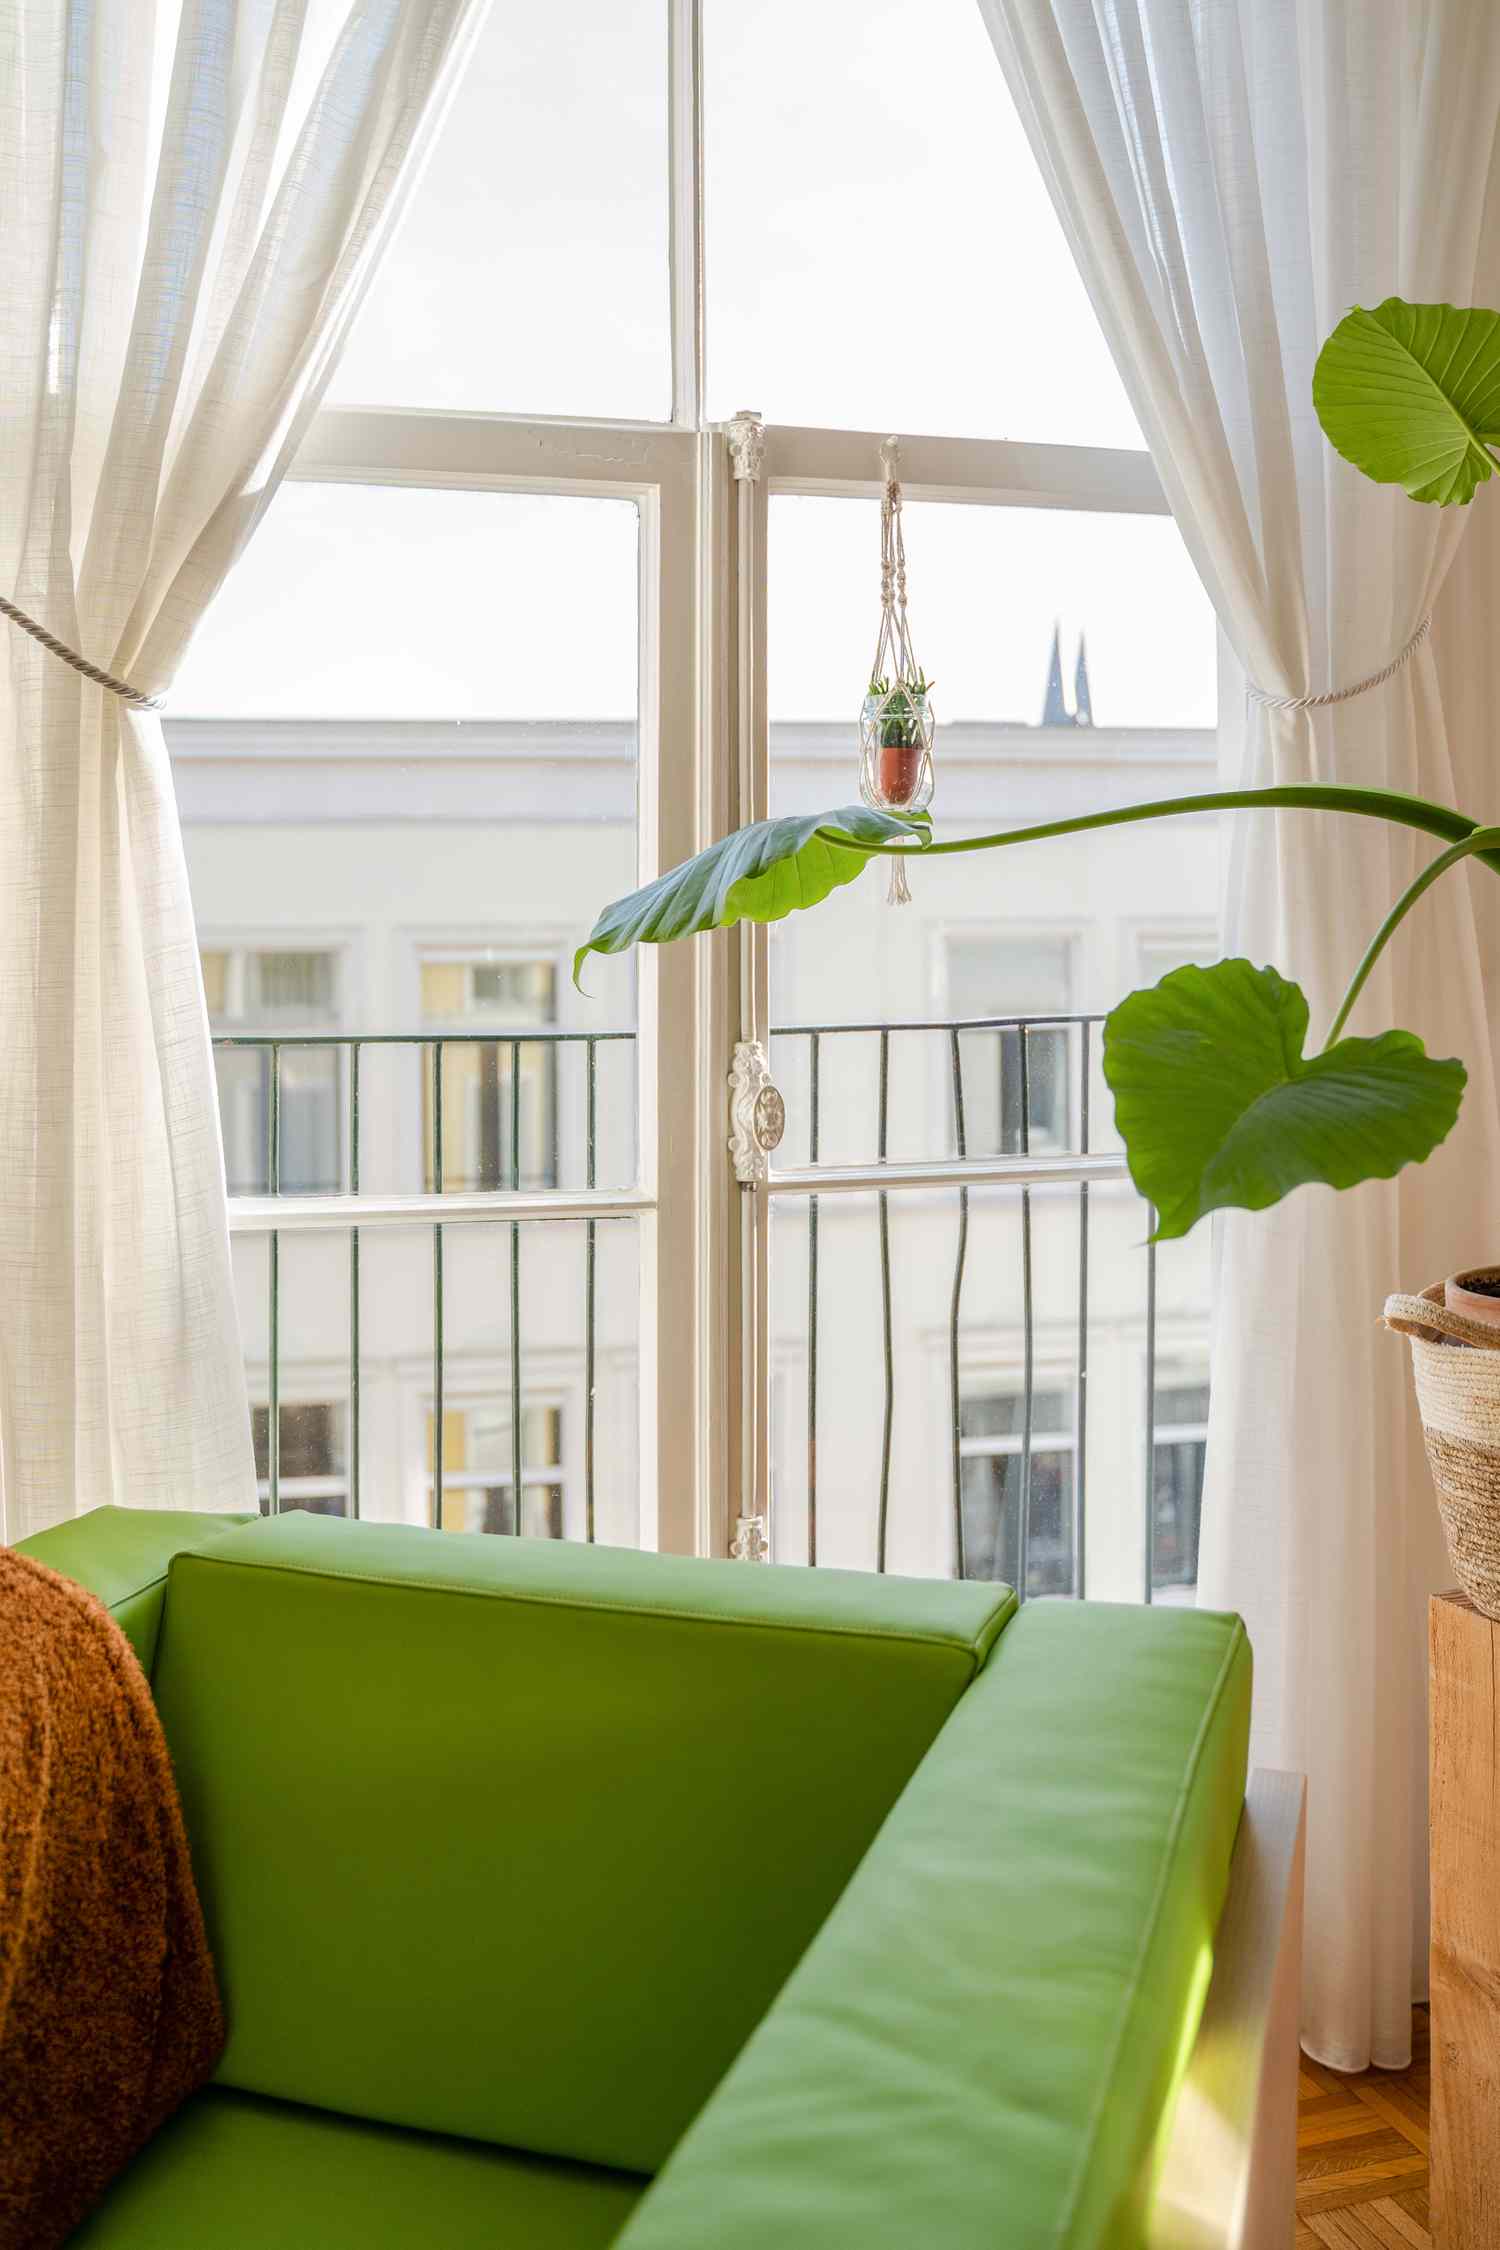 poltrona verde e planta verde ao lado de uma janela com cortinas brancas